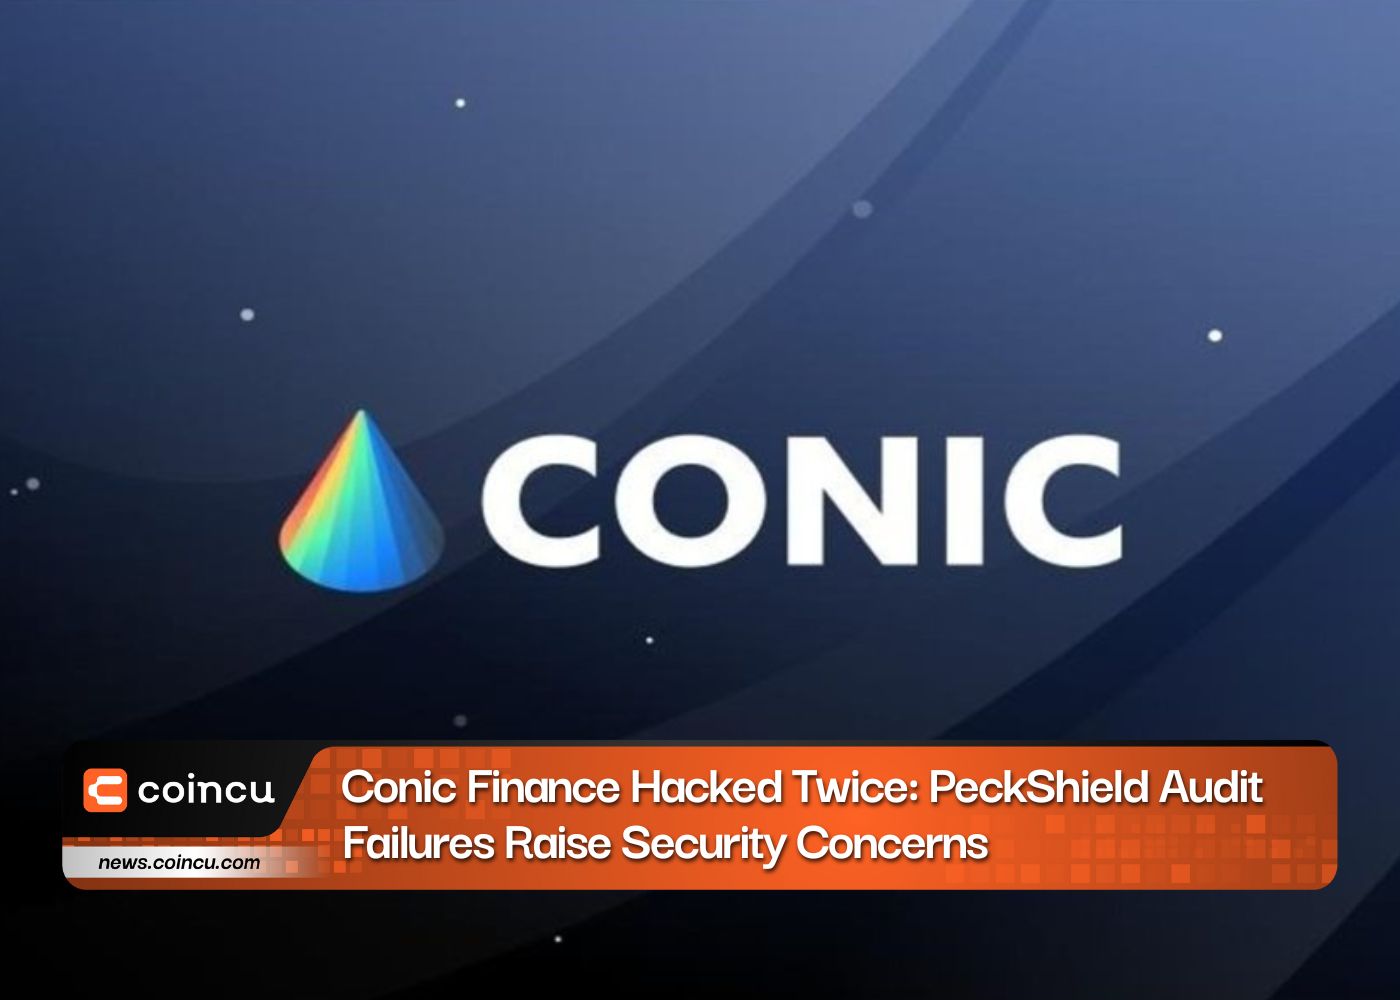 Conic Finance взломали дважды: провалы аудита PeckShield вызывают опасения по поводу безопасности